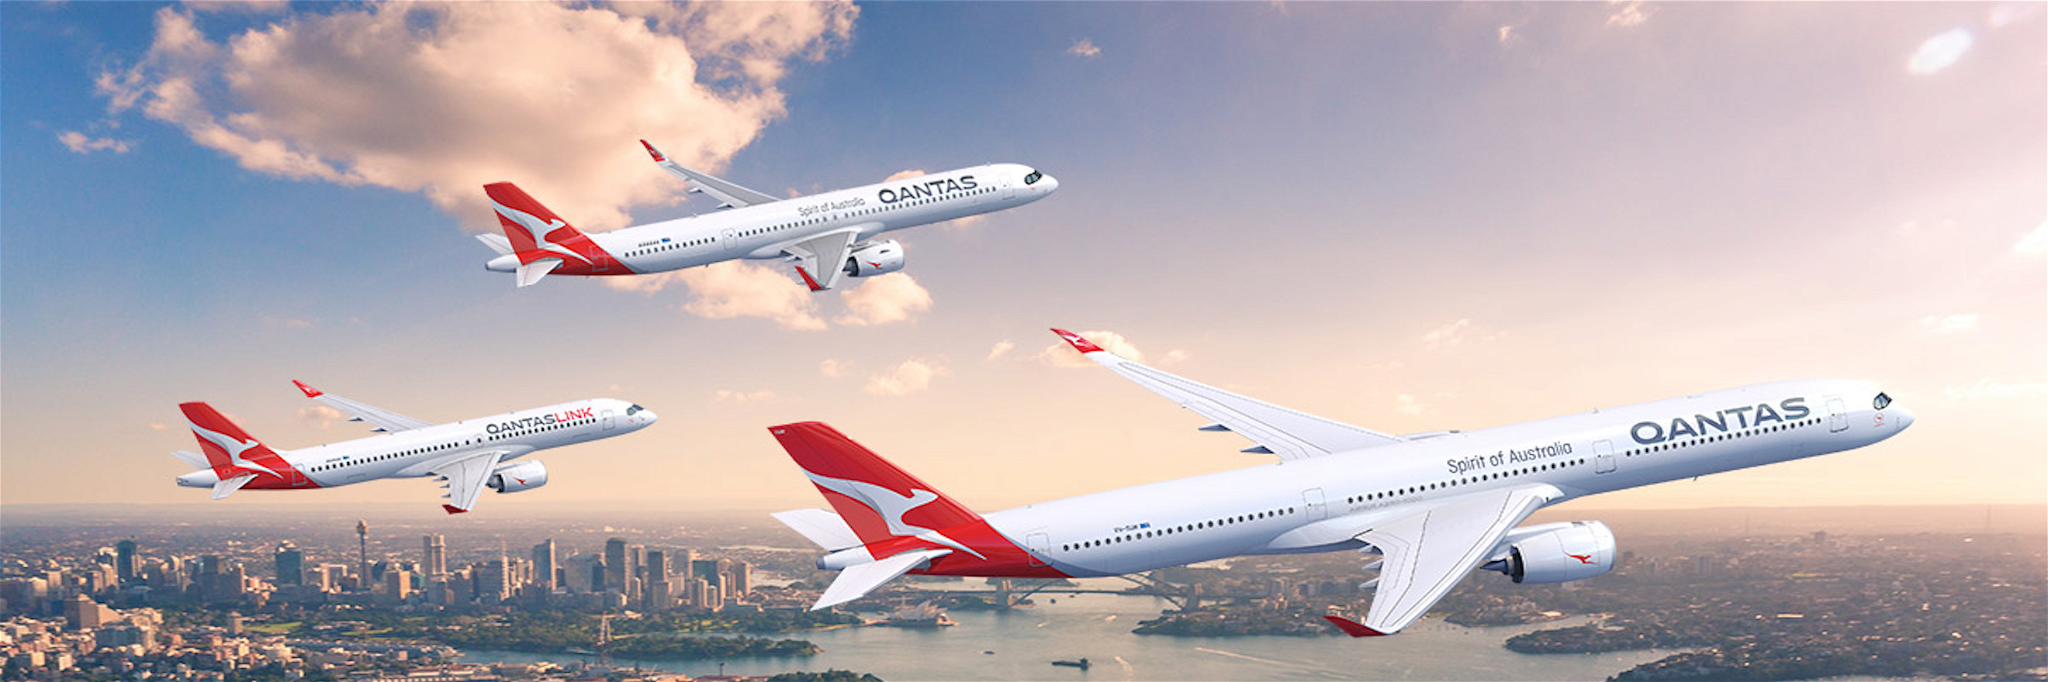 Qantas' new aircraft.